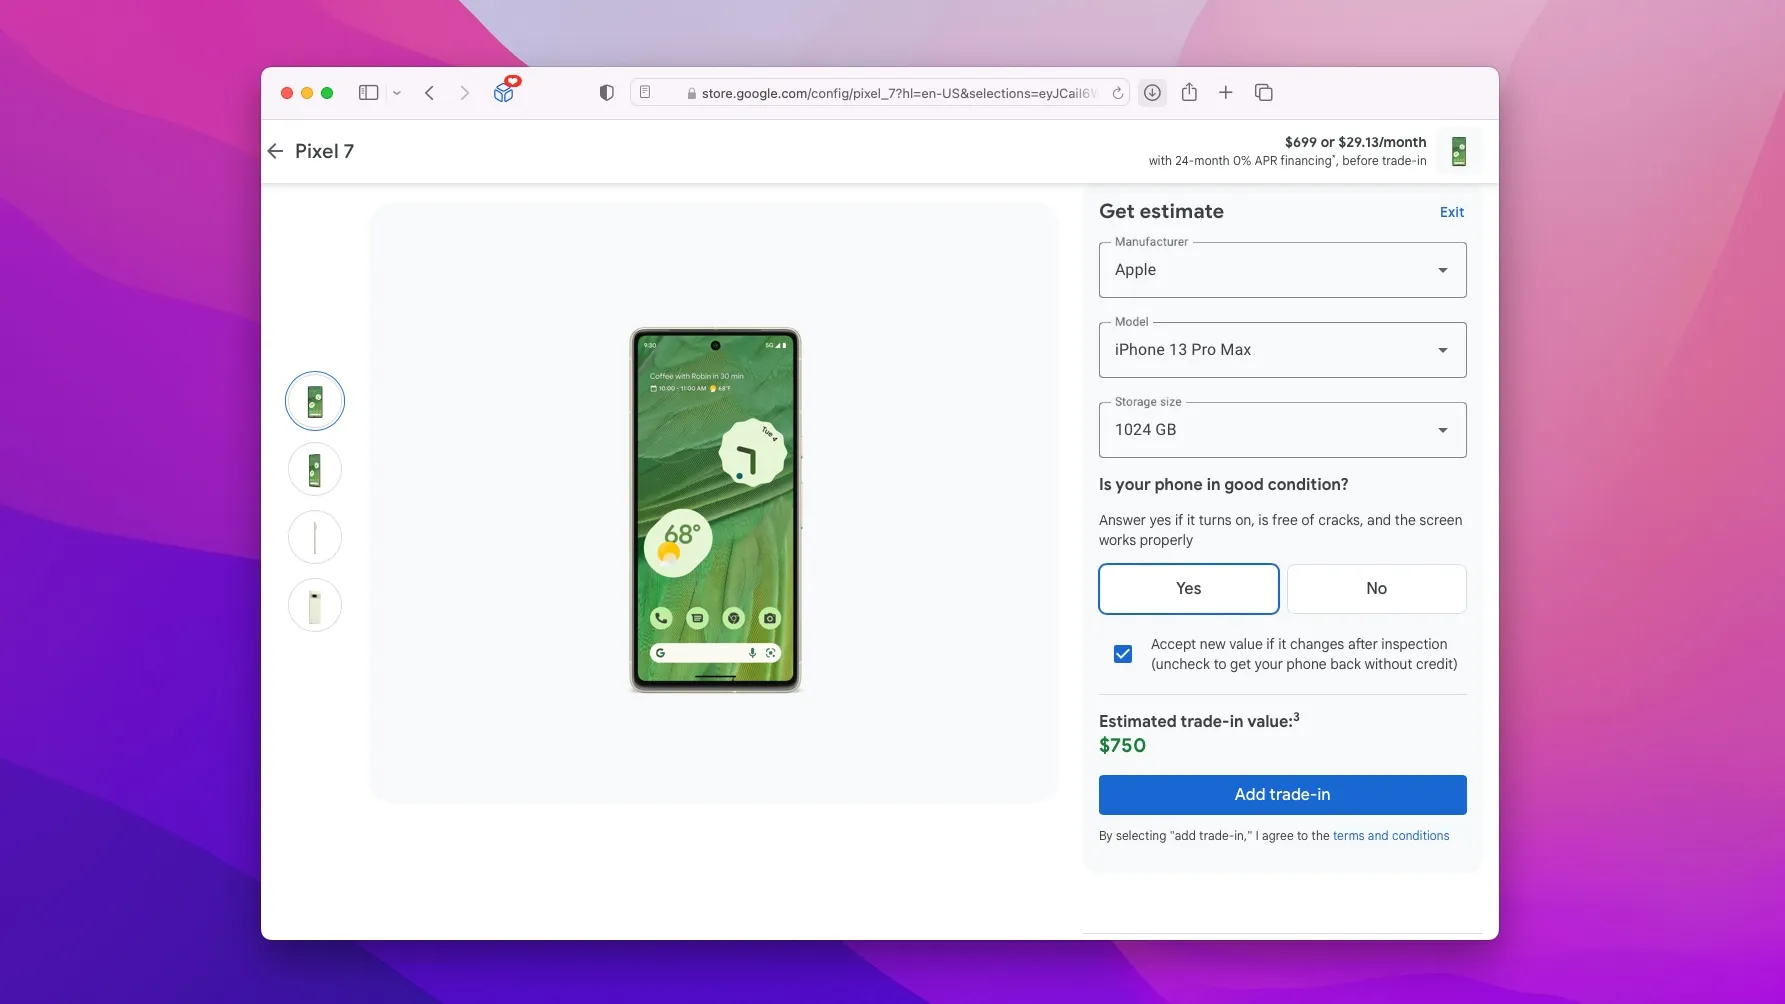 Сделка с Google: получите Pixel 7 за 699 ​​долларов бесплатно, обменяв свой iPhone 13 Pro Max на 1 ТБ